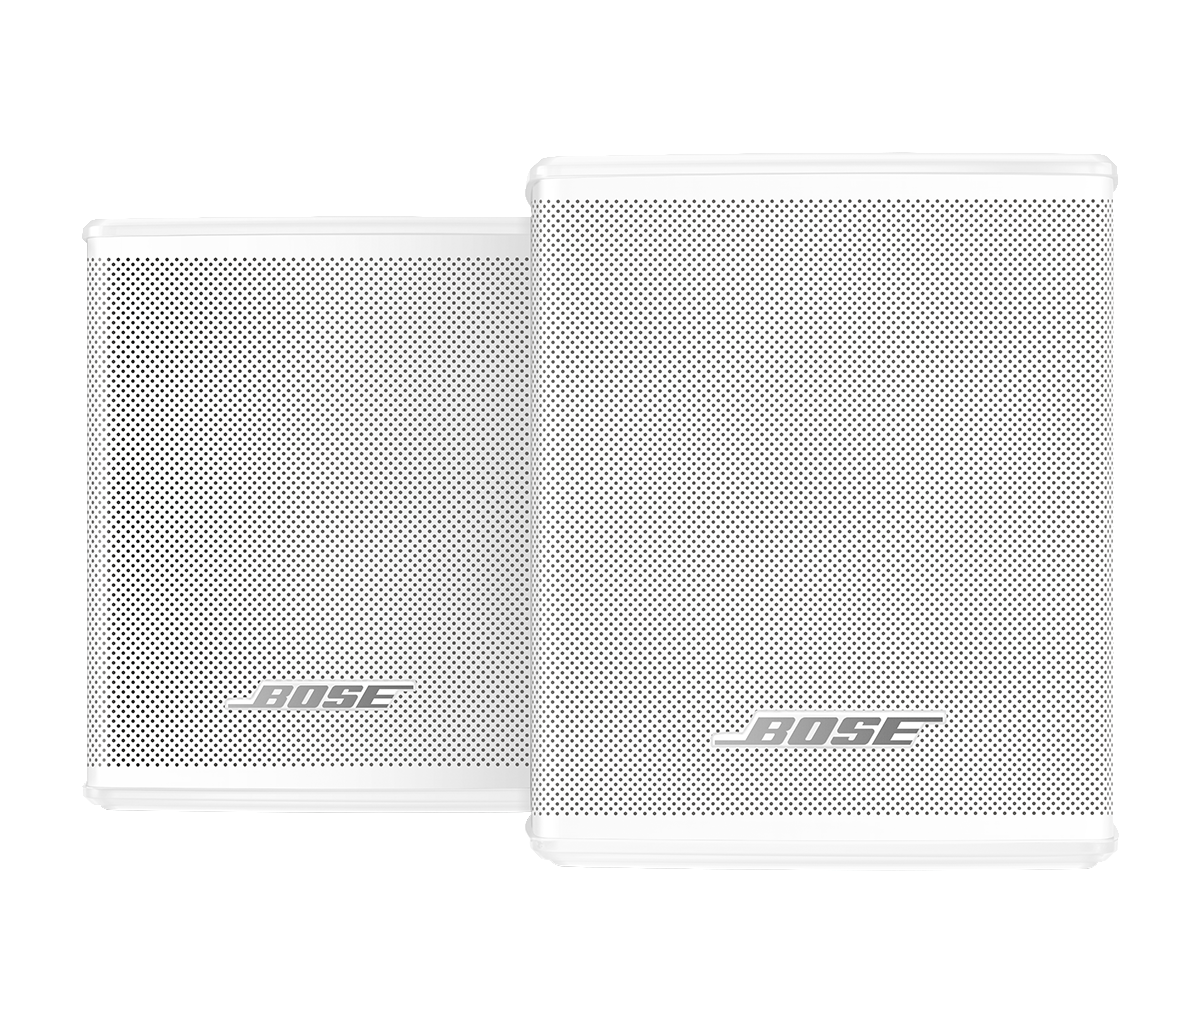 Bose Surround Speakers - Prodotto Ricondizionato Arctic White